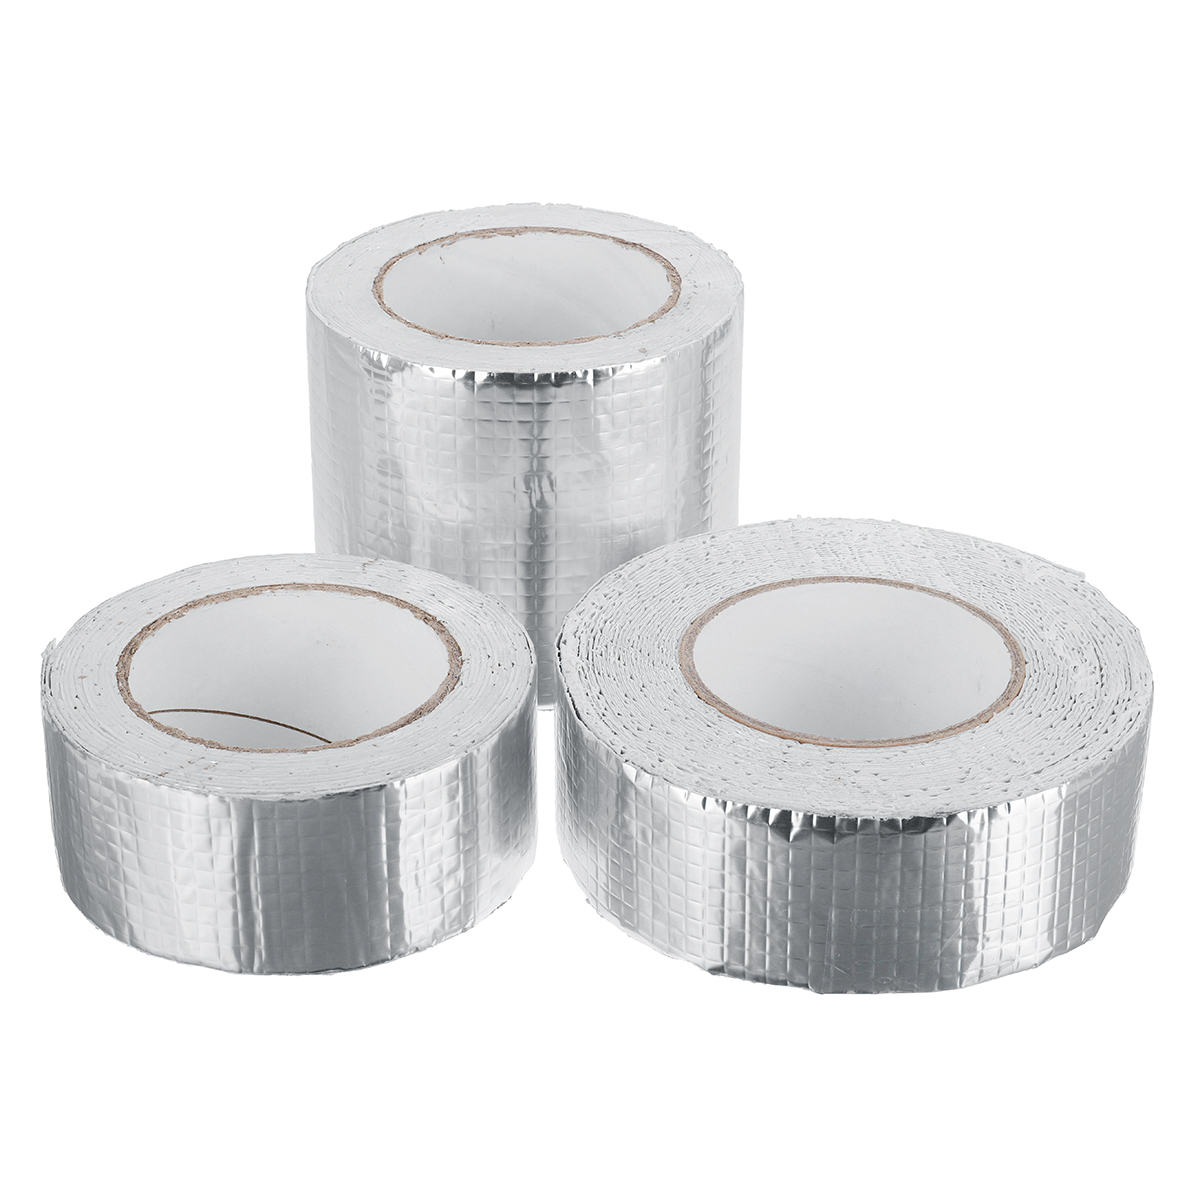 Aluminum-Foil-Butyl-Rubber-Tape-Self-Adhesive-Waterproof-Home-Roof-Pipe-Repair-Tape-1681292-4